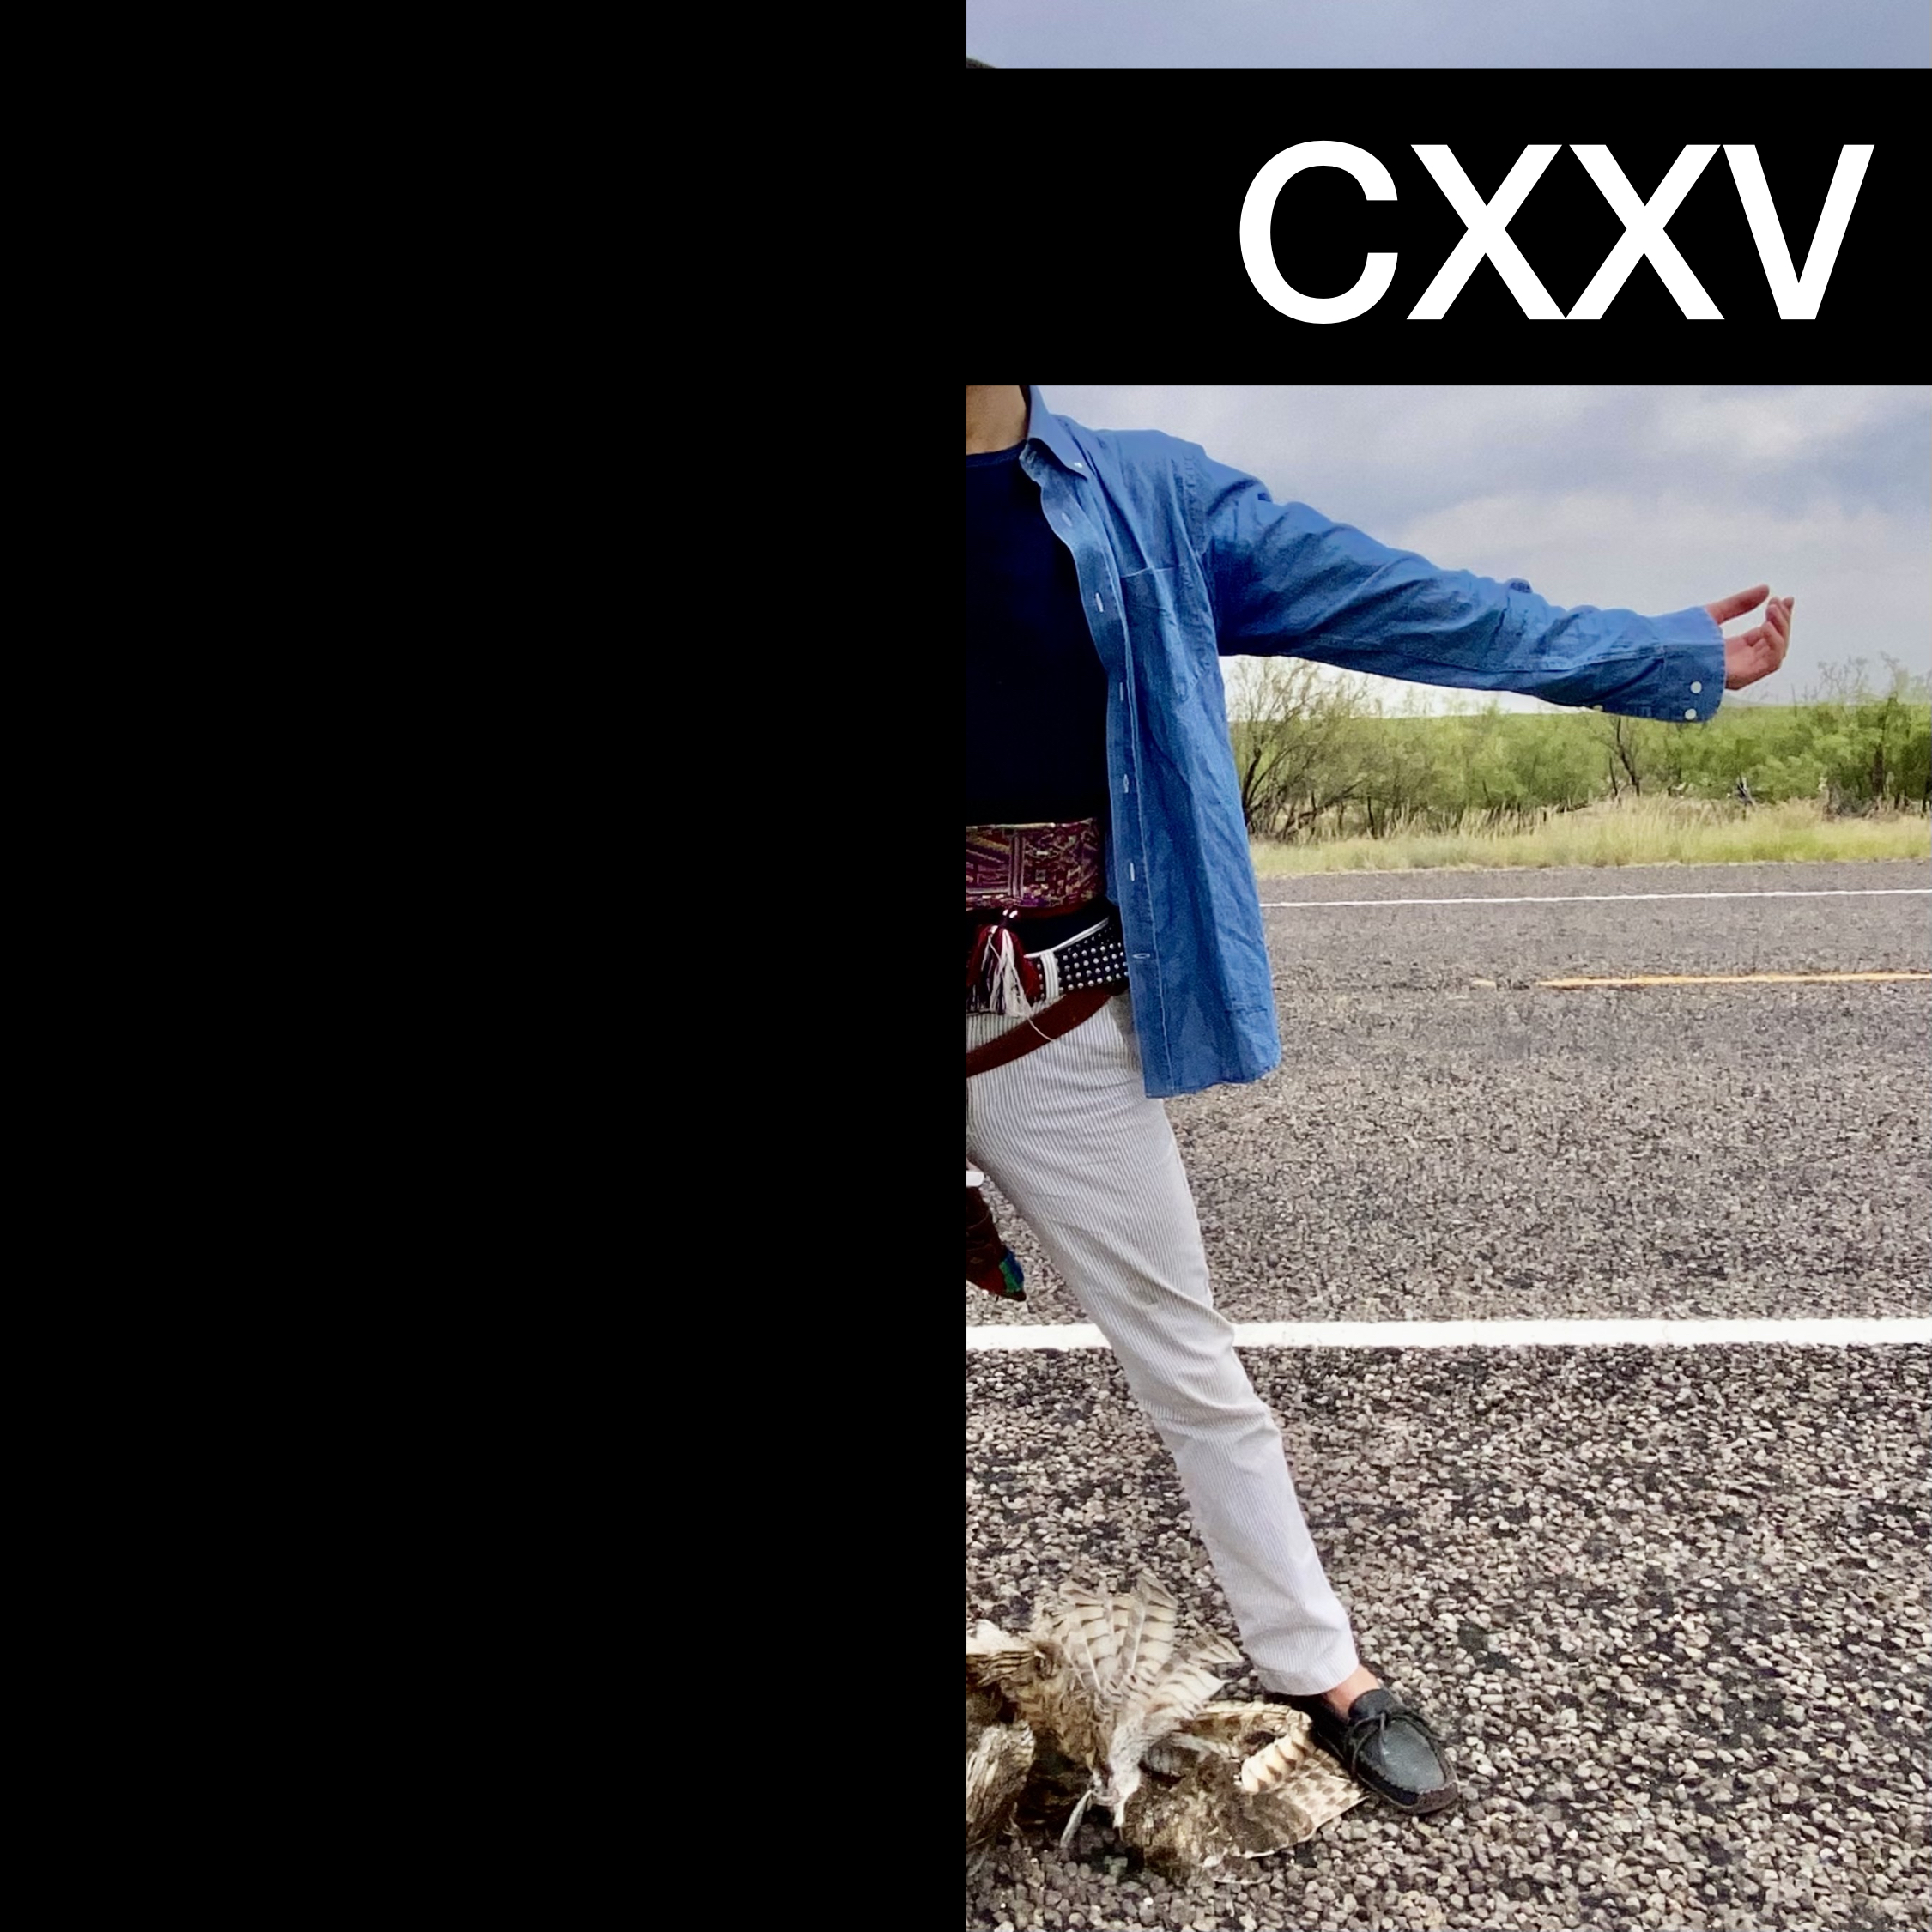 #CXXV